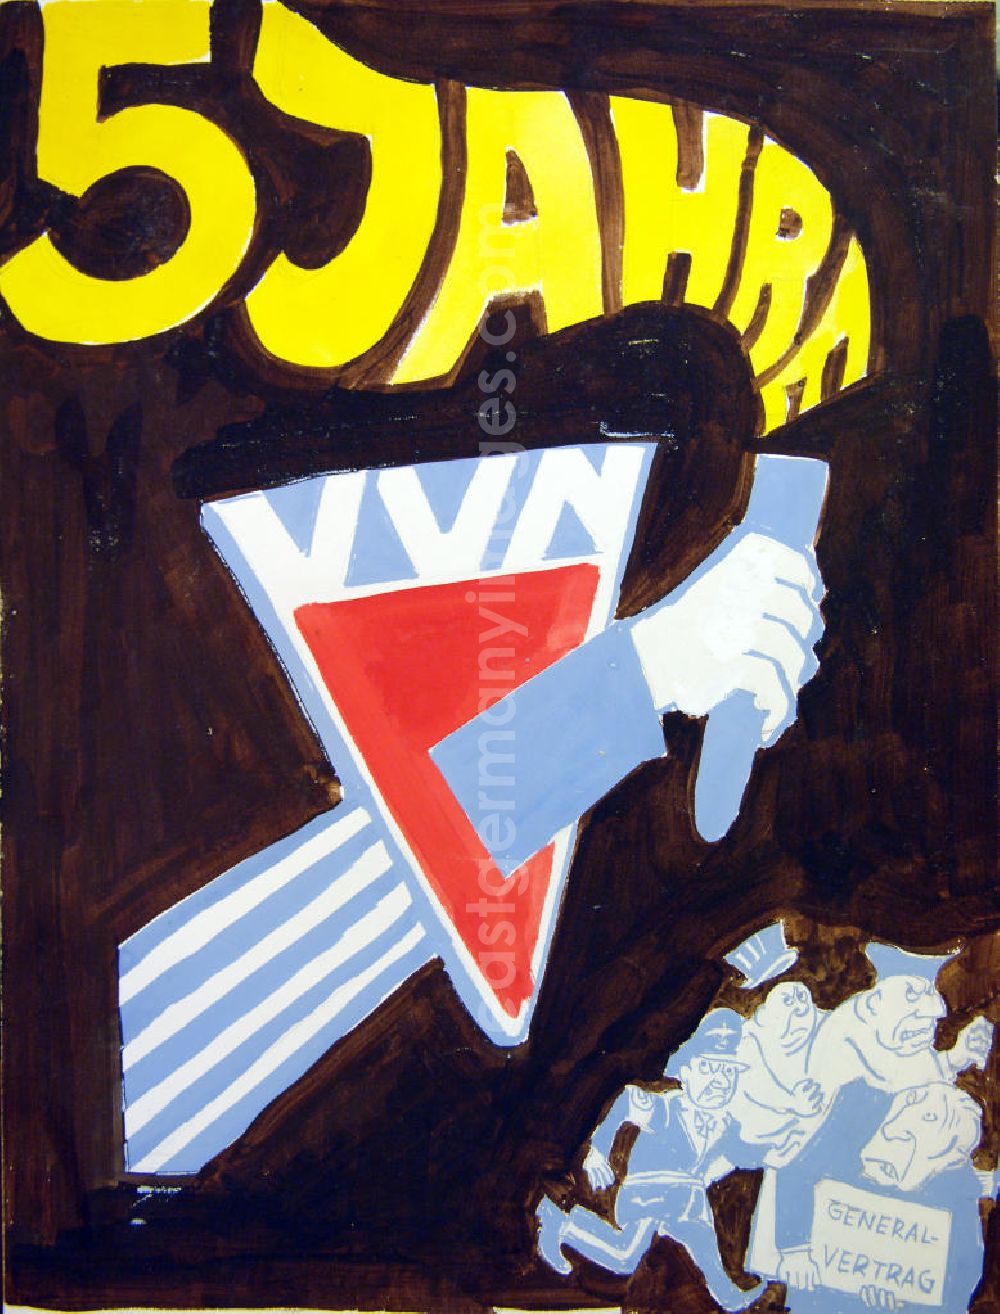 GDR image archive: Berlin - Zeichnung von Herbert Sandberg 5 Jahre VVN (braun) 30,5x4